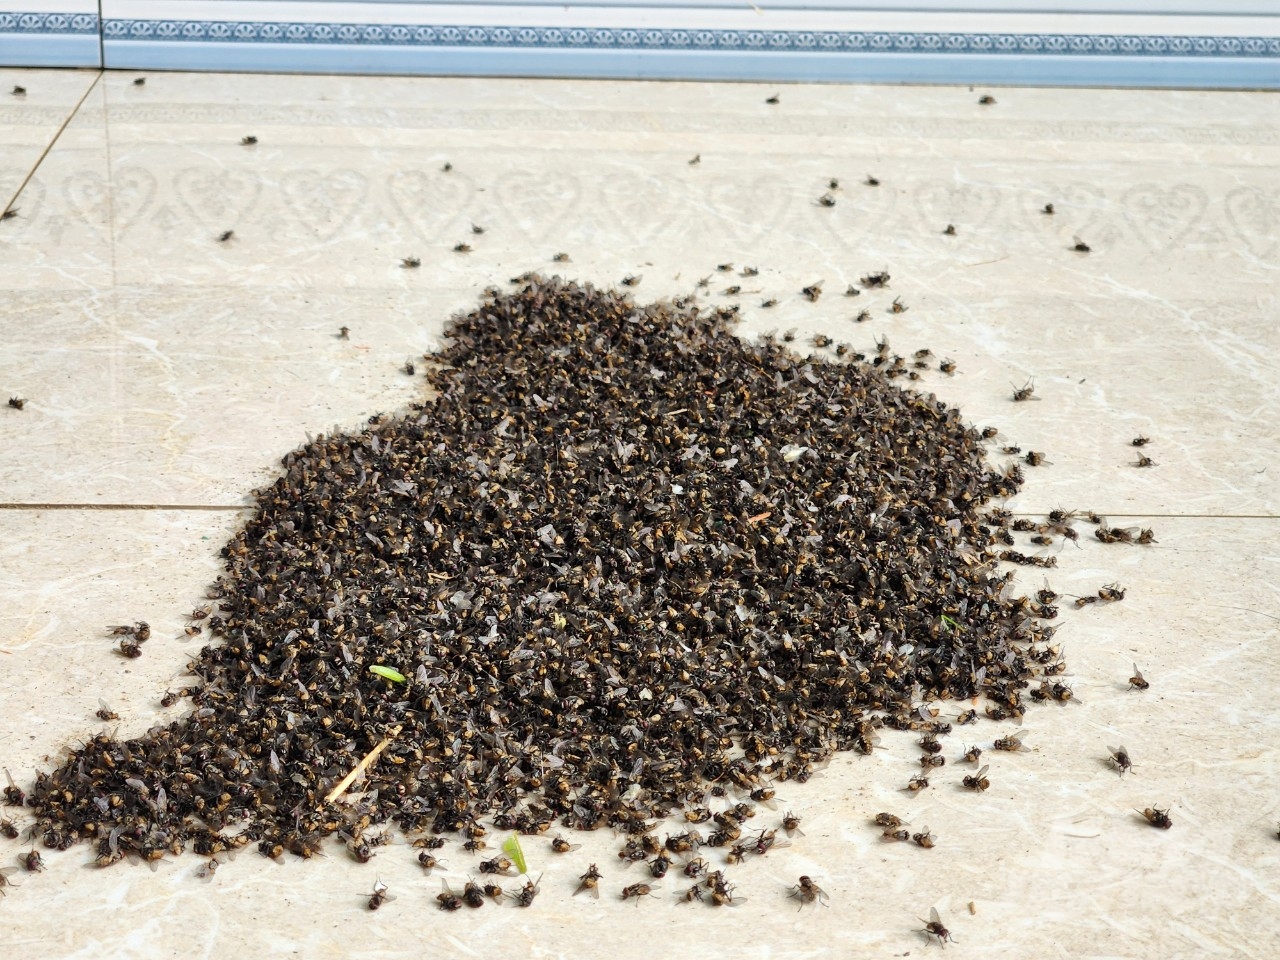 Mỗi ngày, các hộ dân thôn Đồng Hội xử lý khoảng 2 - 3kg ruồi. Ảnh: Quốc Toản.